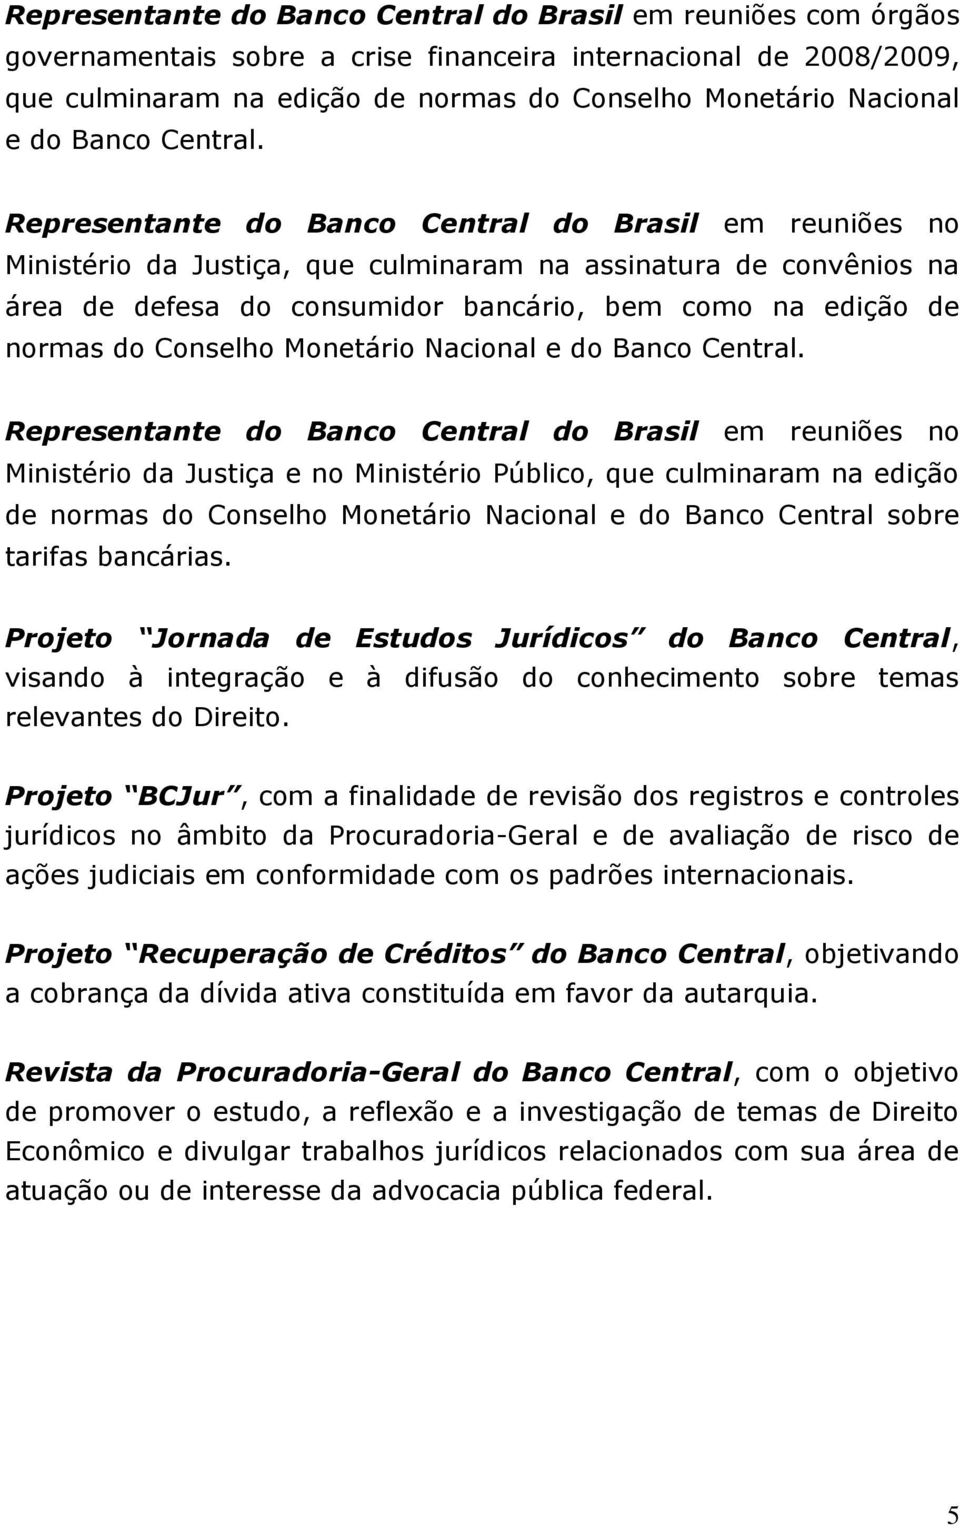 Representante do Banco Central do Brasil em reuniões no Ministério da Justiça, que culminaram na assinatura de convênios na área de defesa do consumidor bancário, bem como na edição de normas do